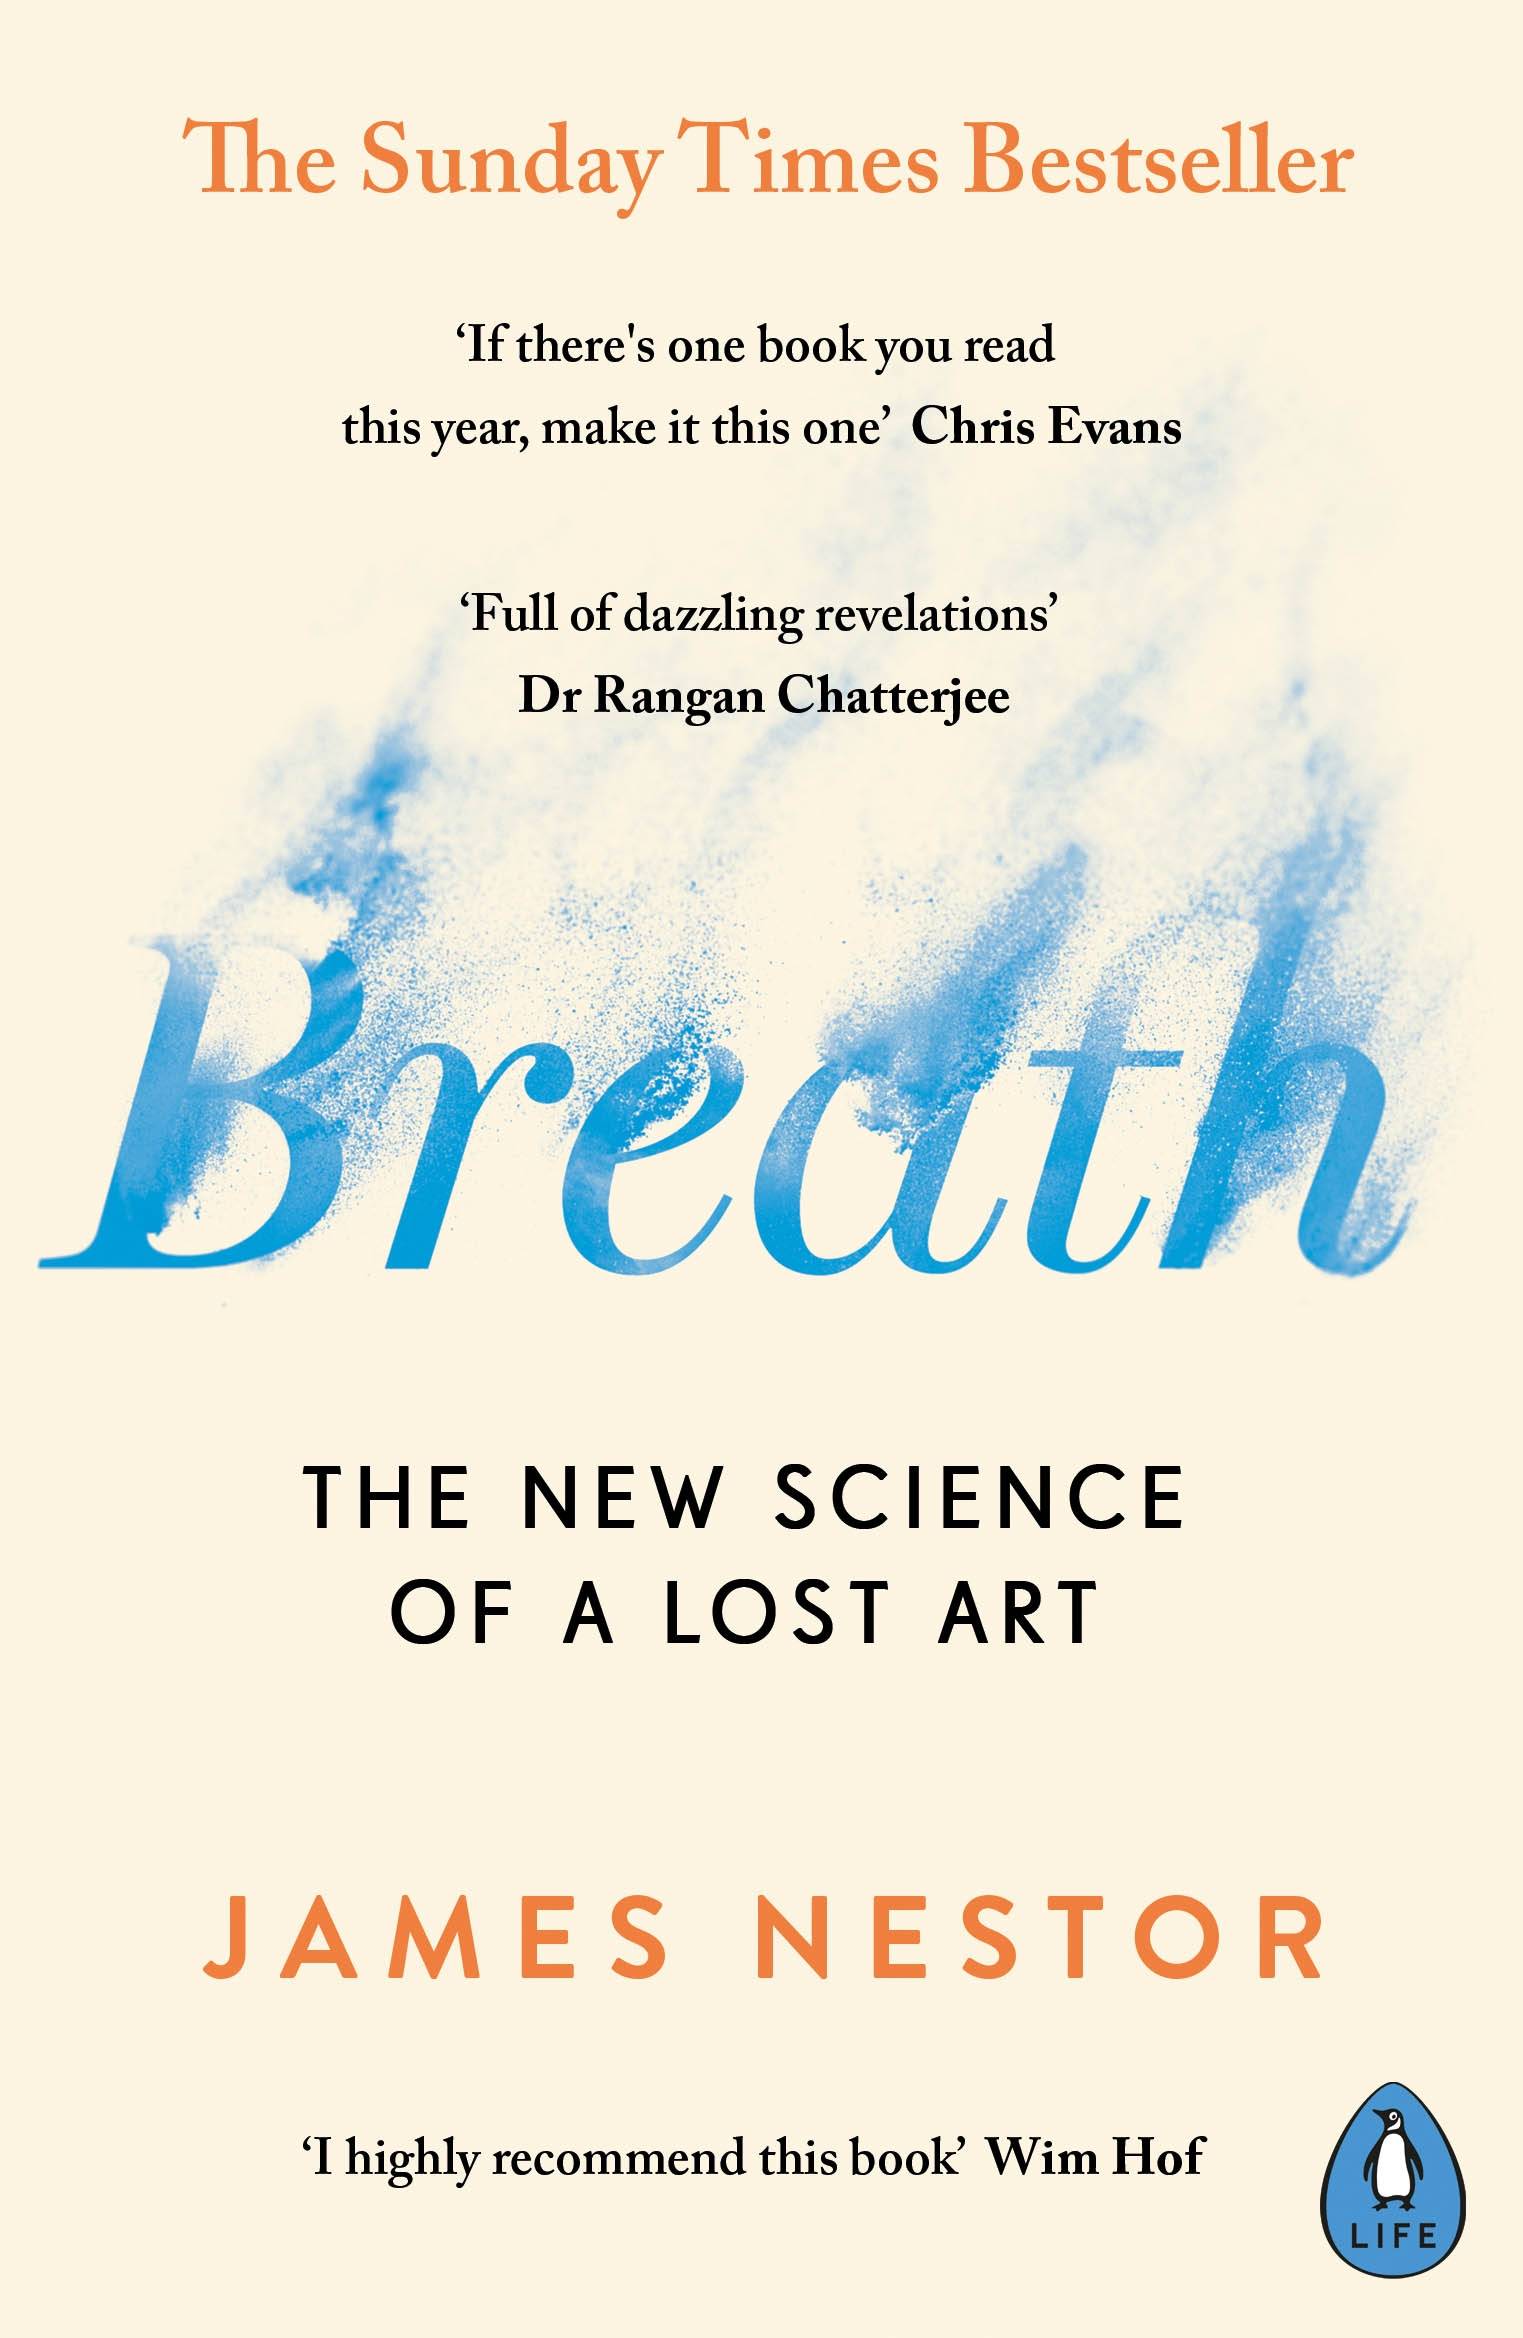 Breath book cover